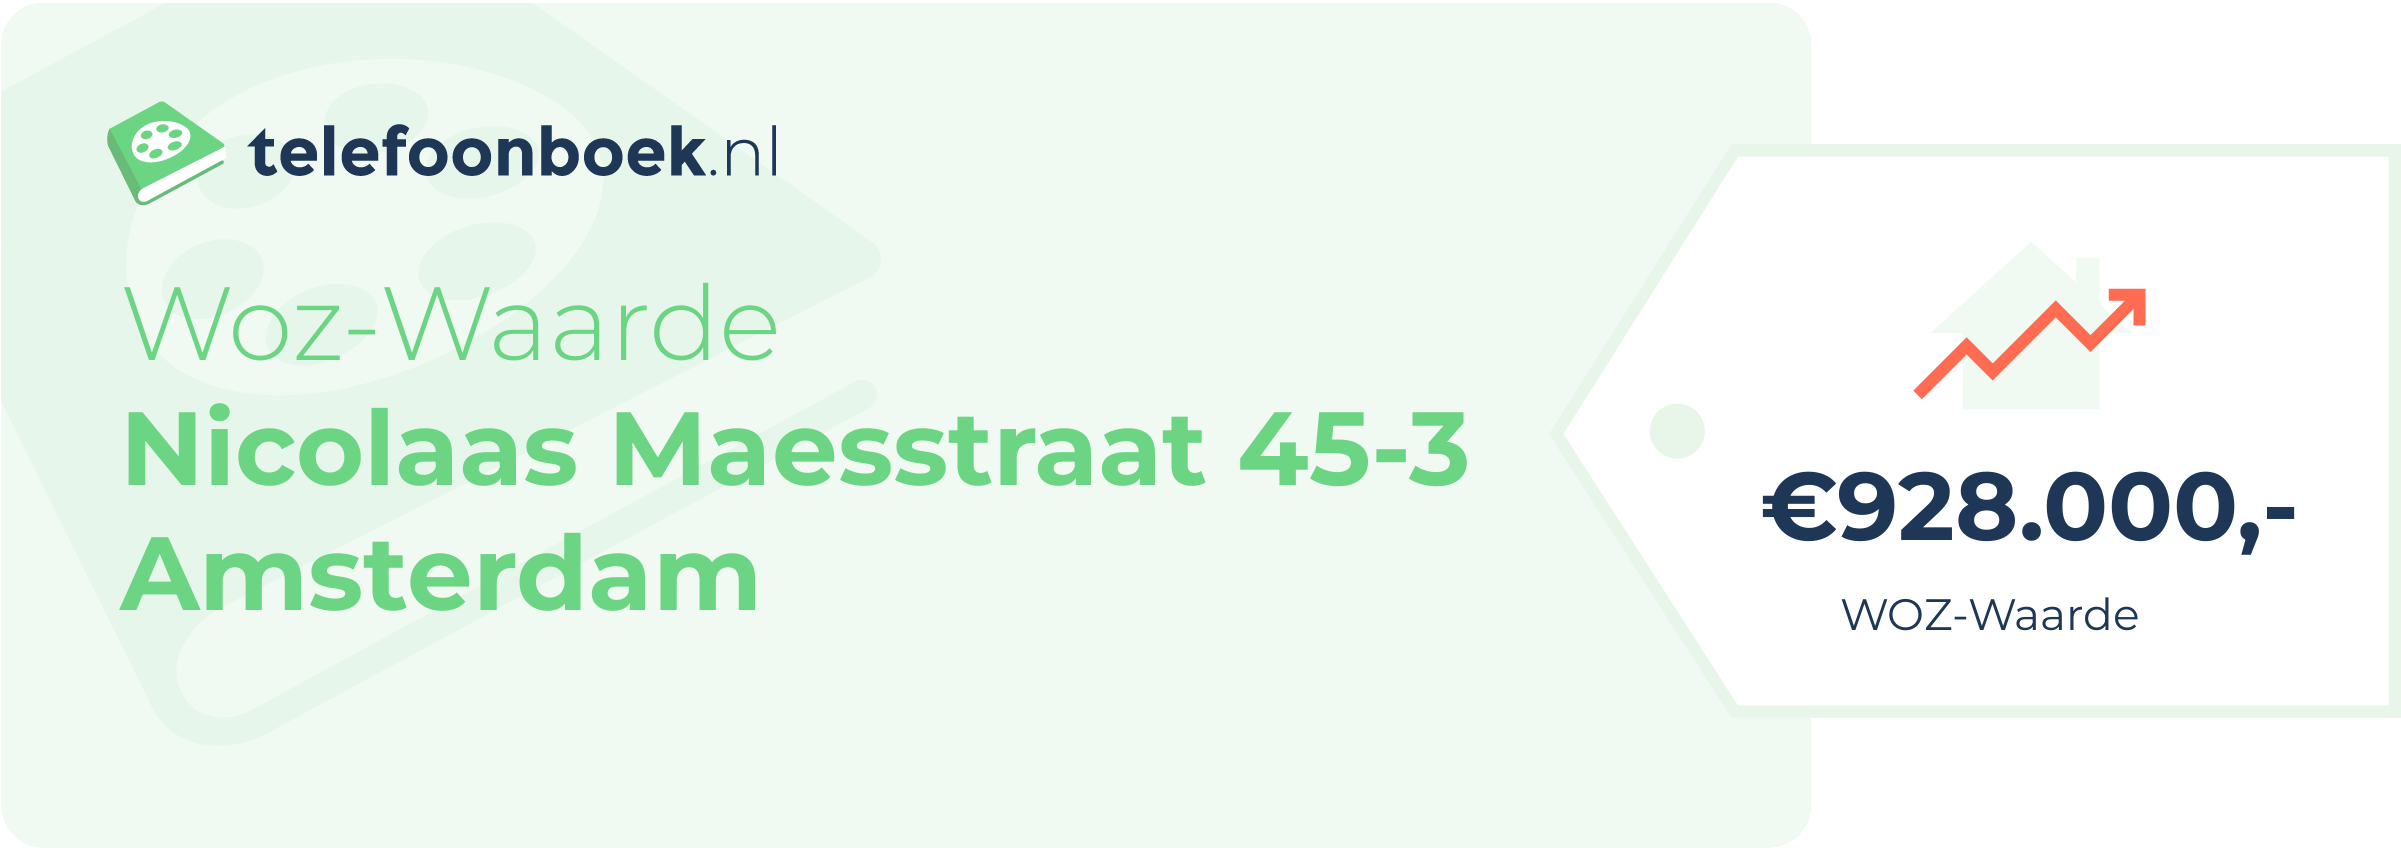 WOZ-waarde Nicolaas Maesstraat 45-3 Amsterdam